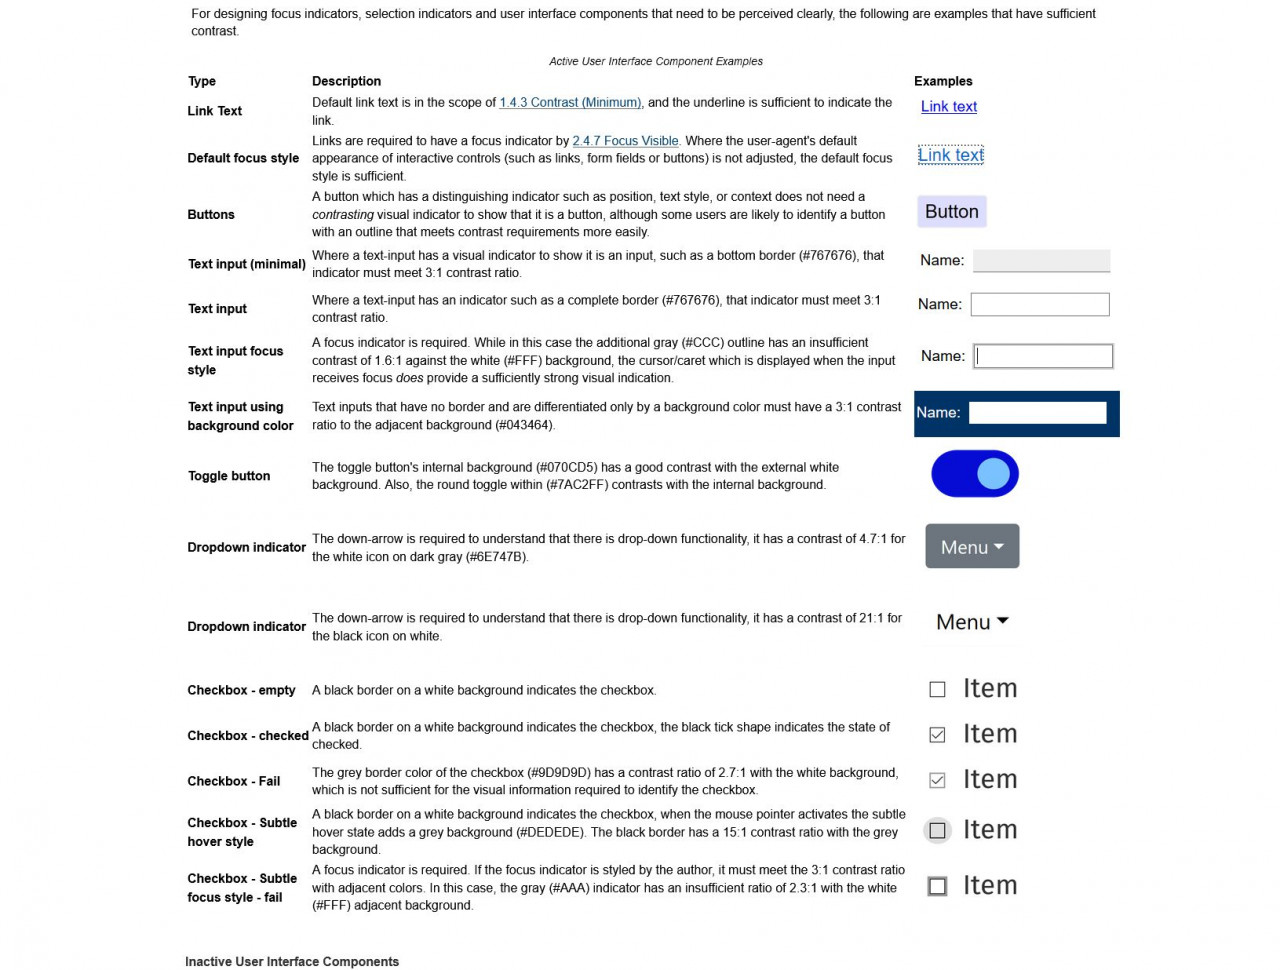 Screenshot des WCAG 2.1 Understanding-Dokuments mit Beispielen